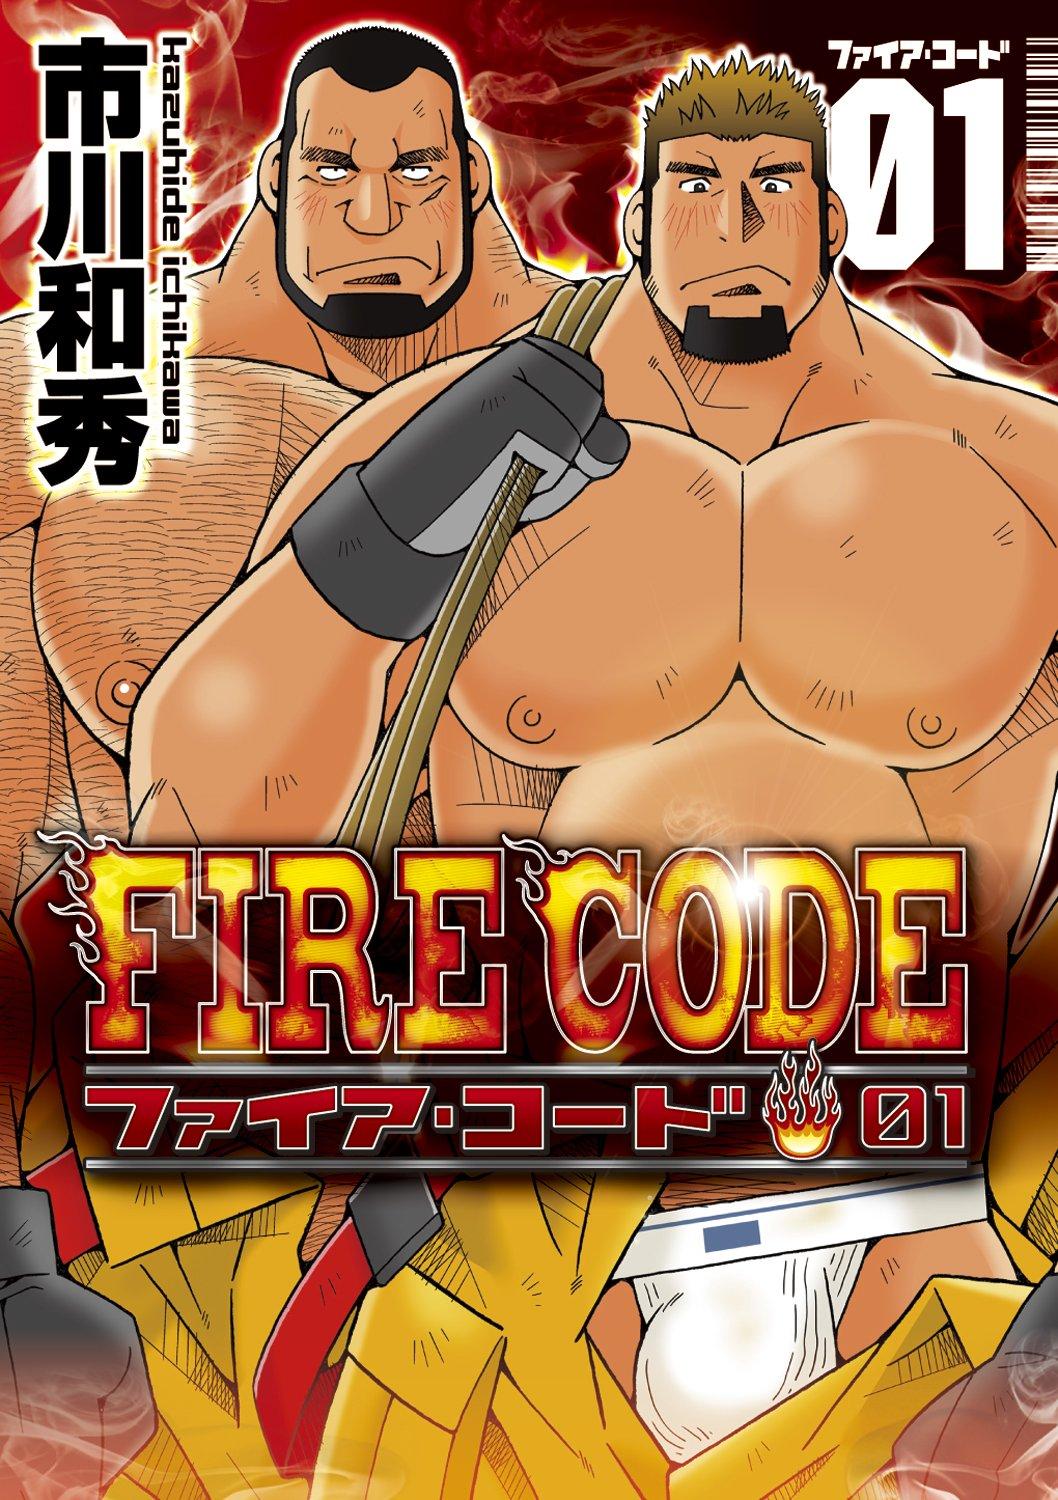 FIRE CODE 01 0